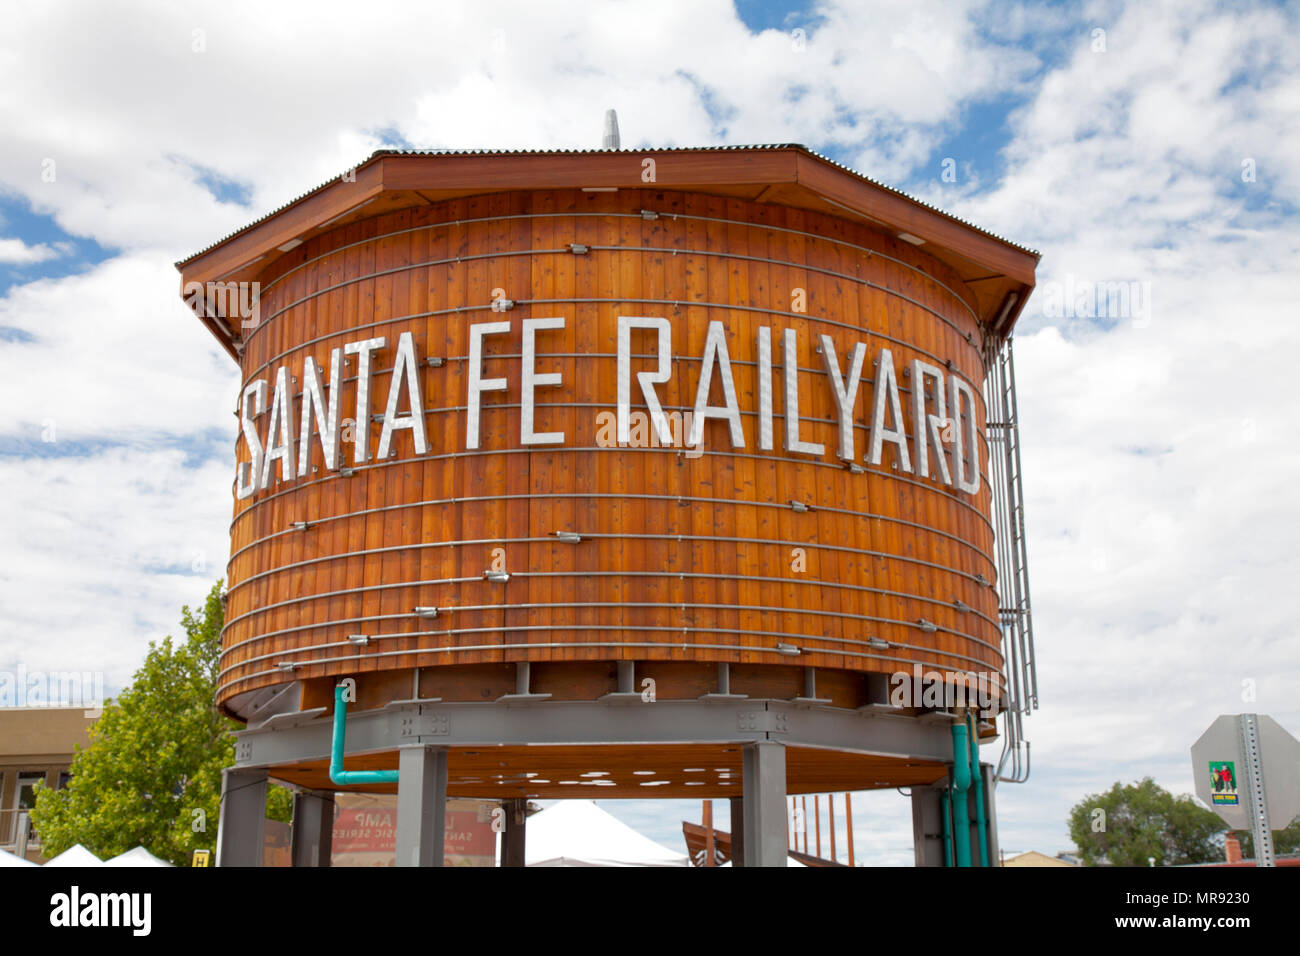 Questa annata in legno serbatoio acqua serve come un punto di riferimento e segno di Santa Fe il popolare quartiere di intrattenimento, la Railyard. I mercati degli agricoltori due volte a settimana Foto Stock